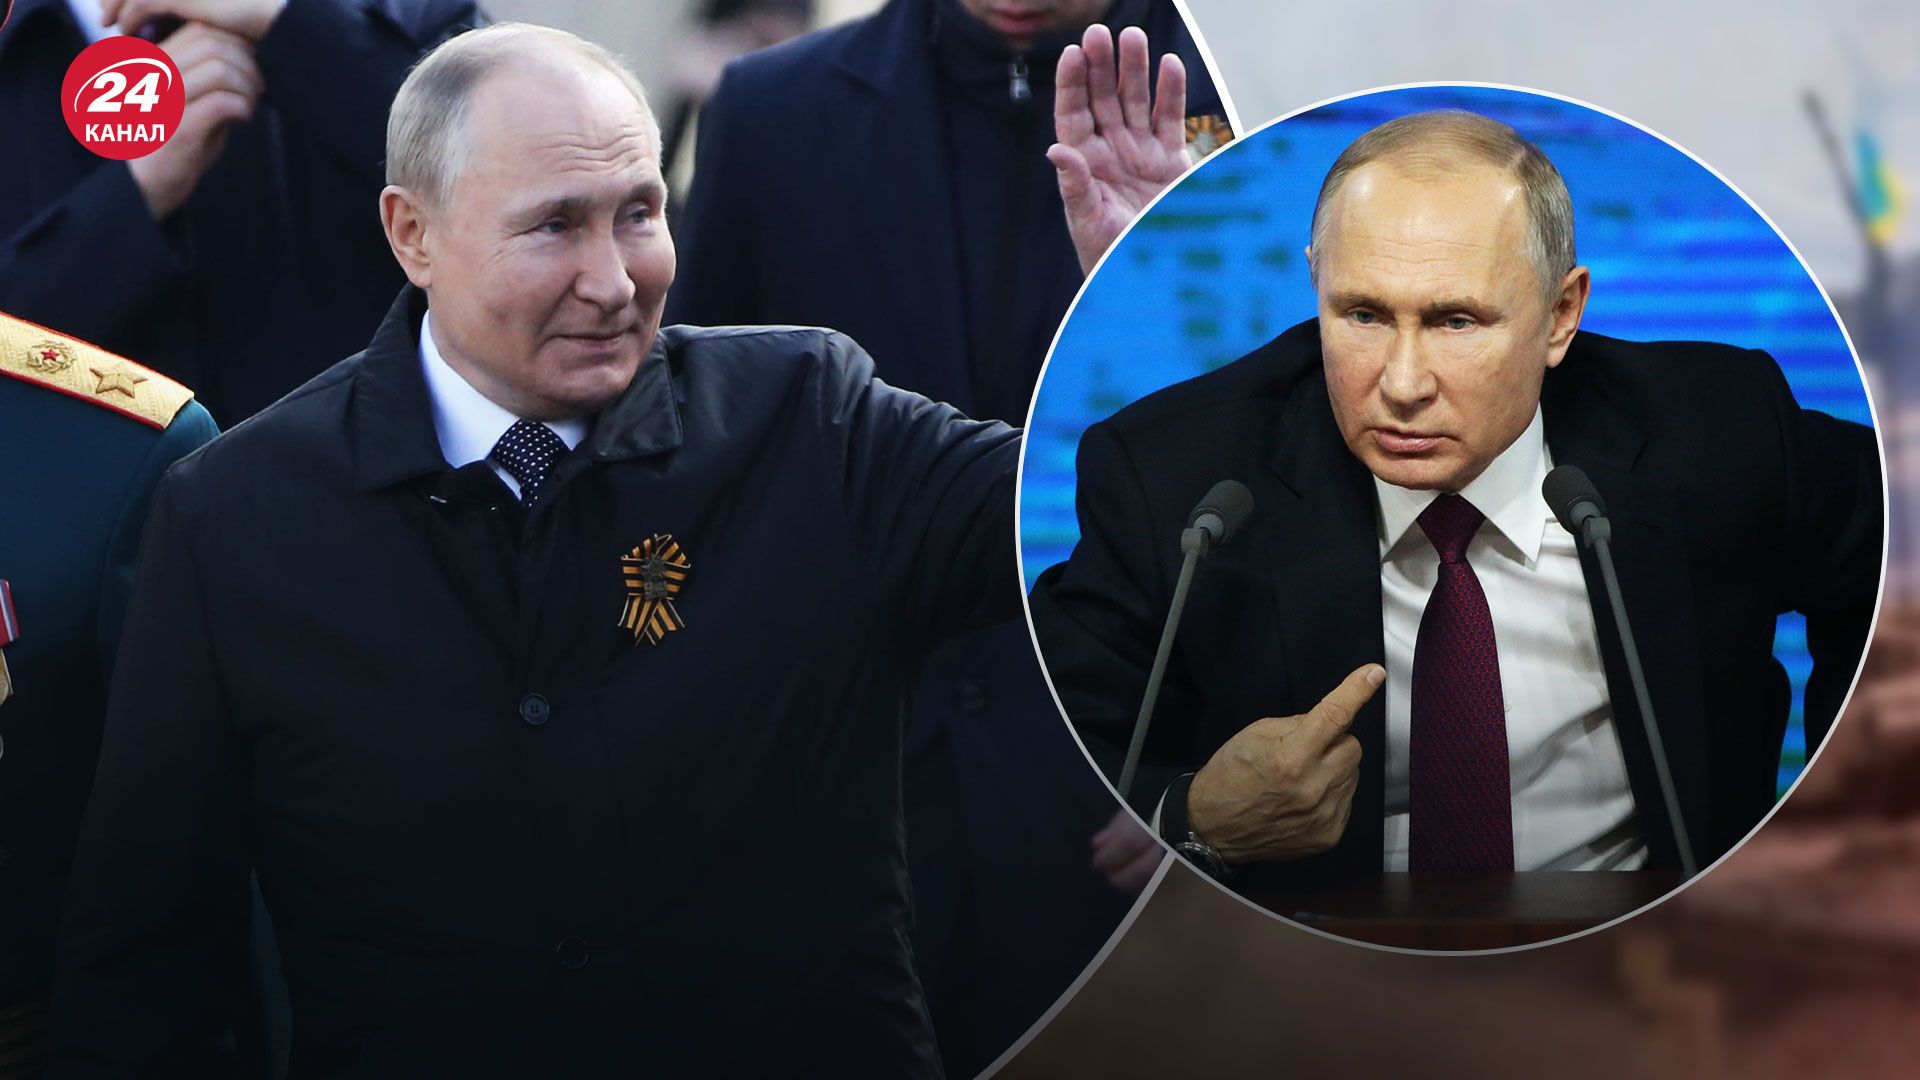 Двійник Путіна міг бути на прямій лінії 14 грудня - які факти про це свідчать